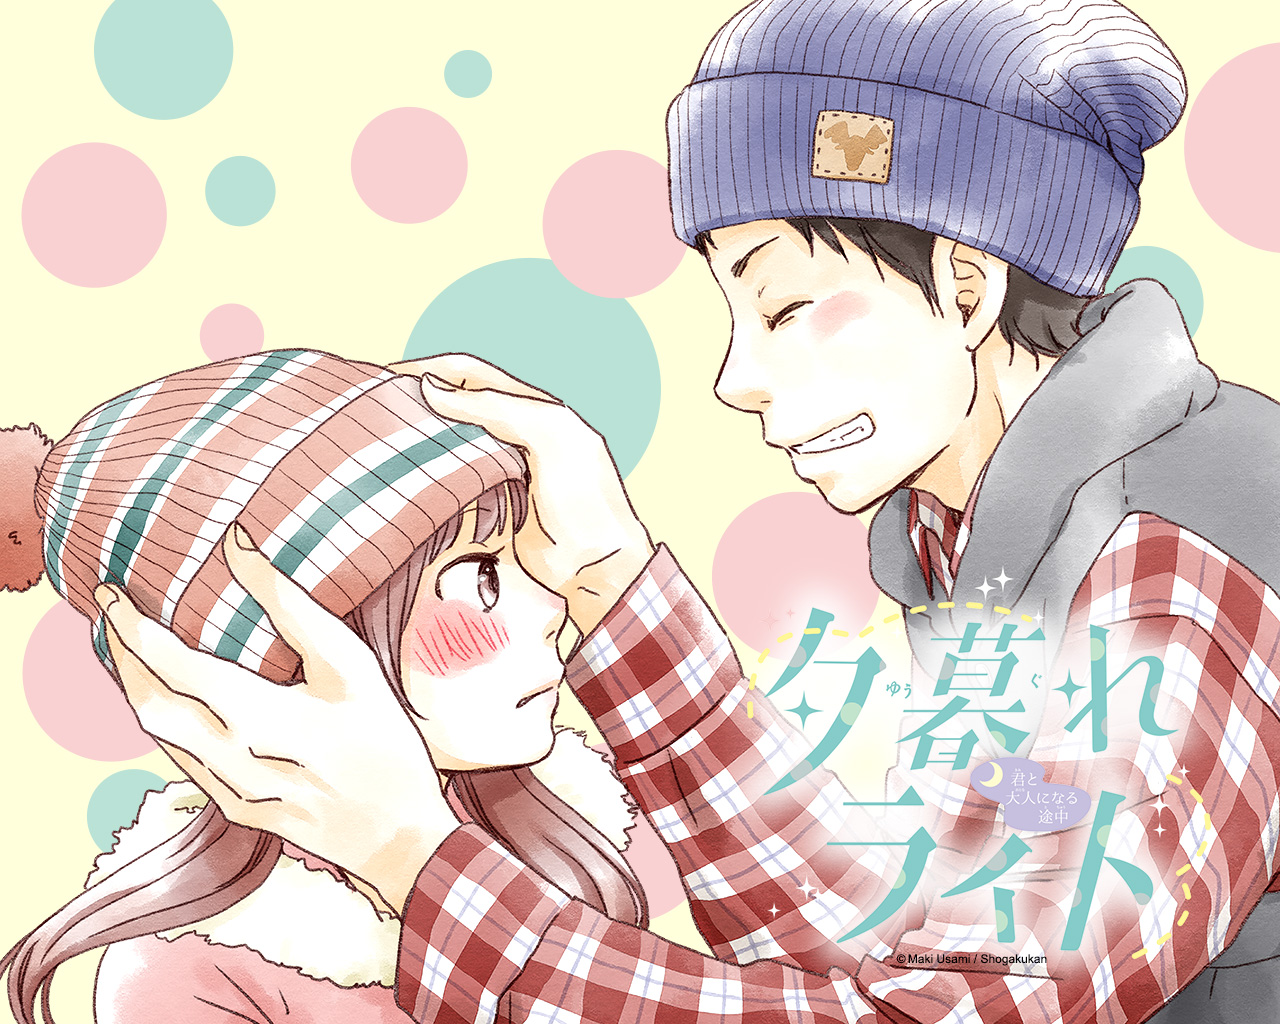 Shoujo Wallpapers For December 14 Heart Of Manga